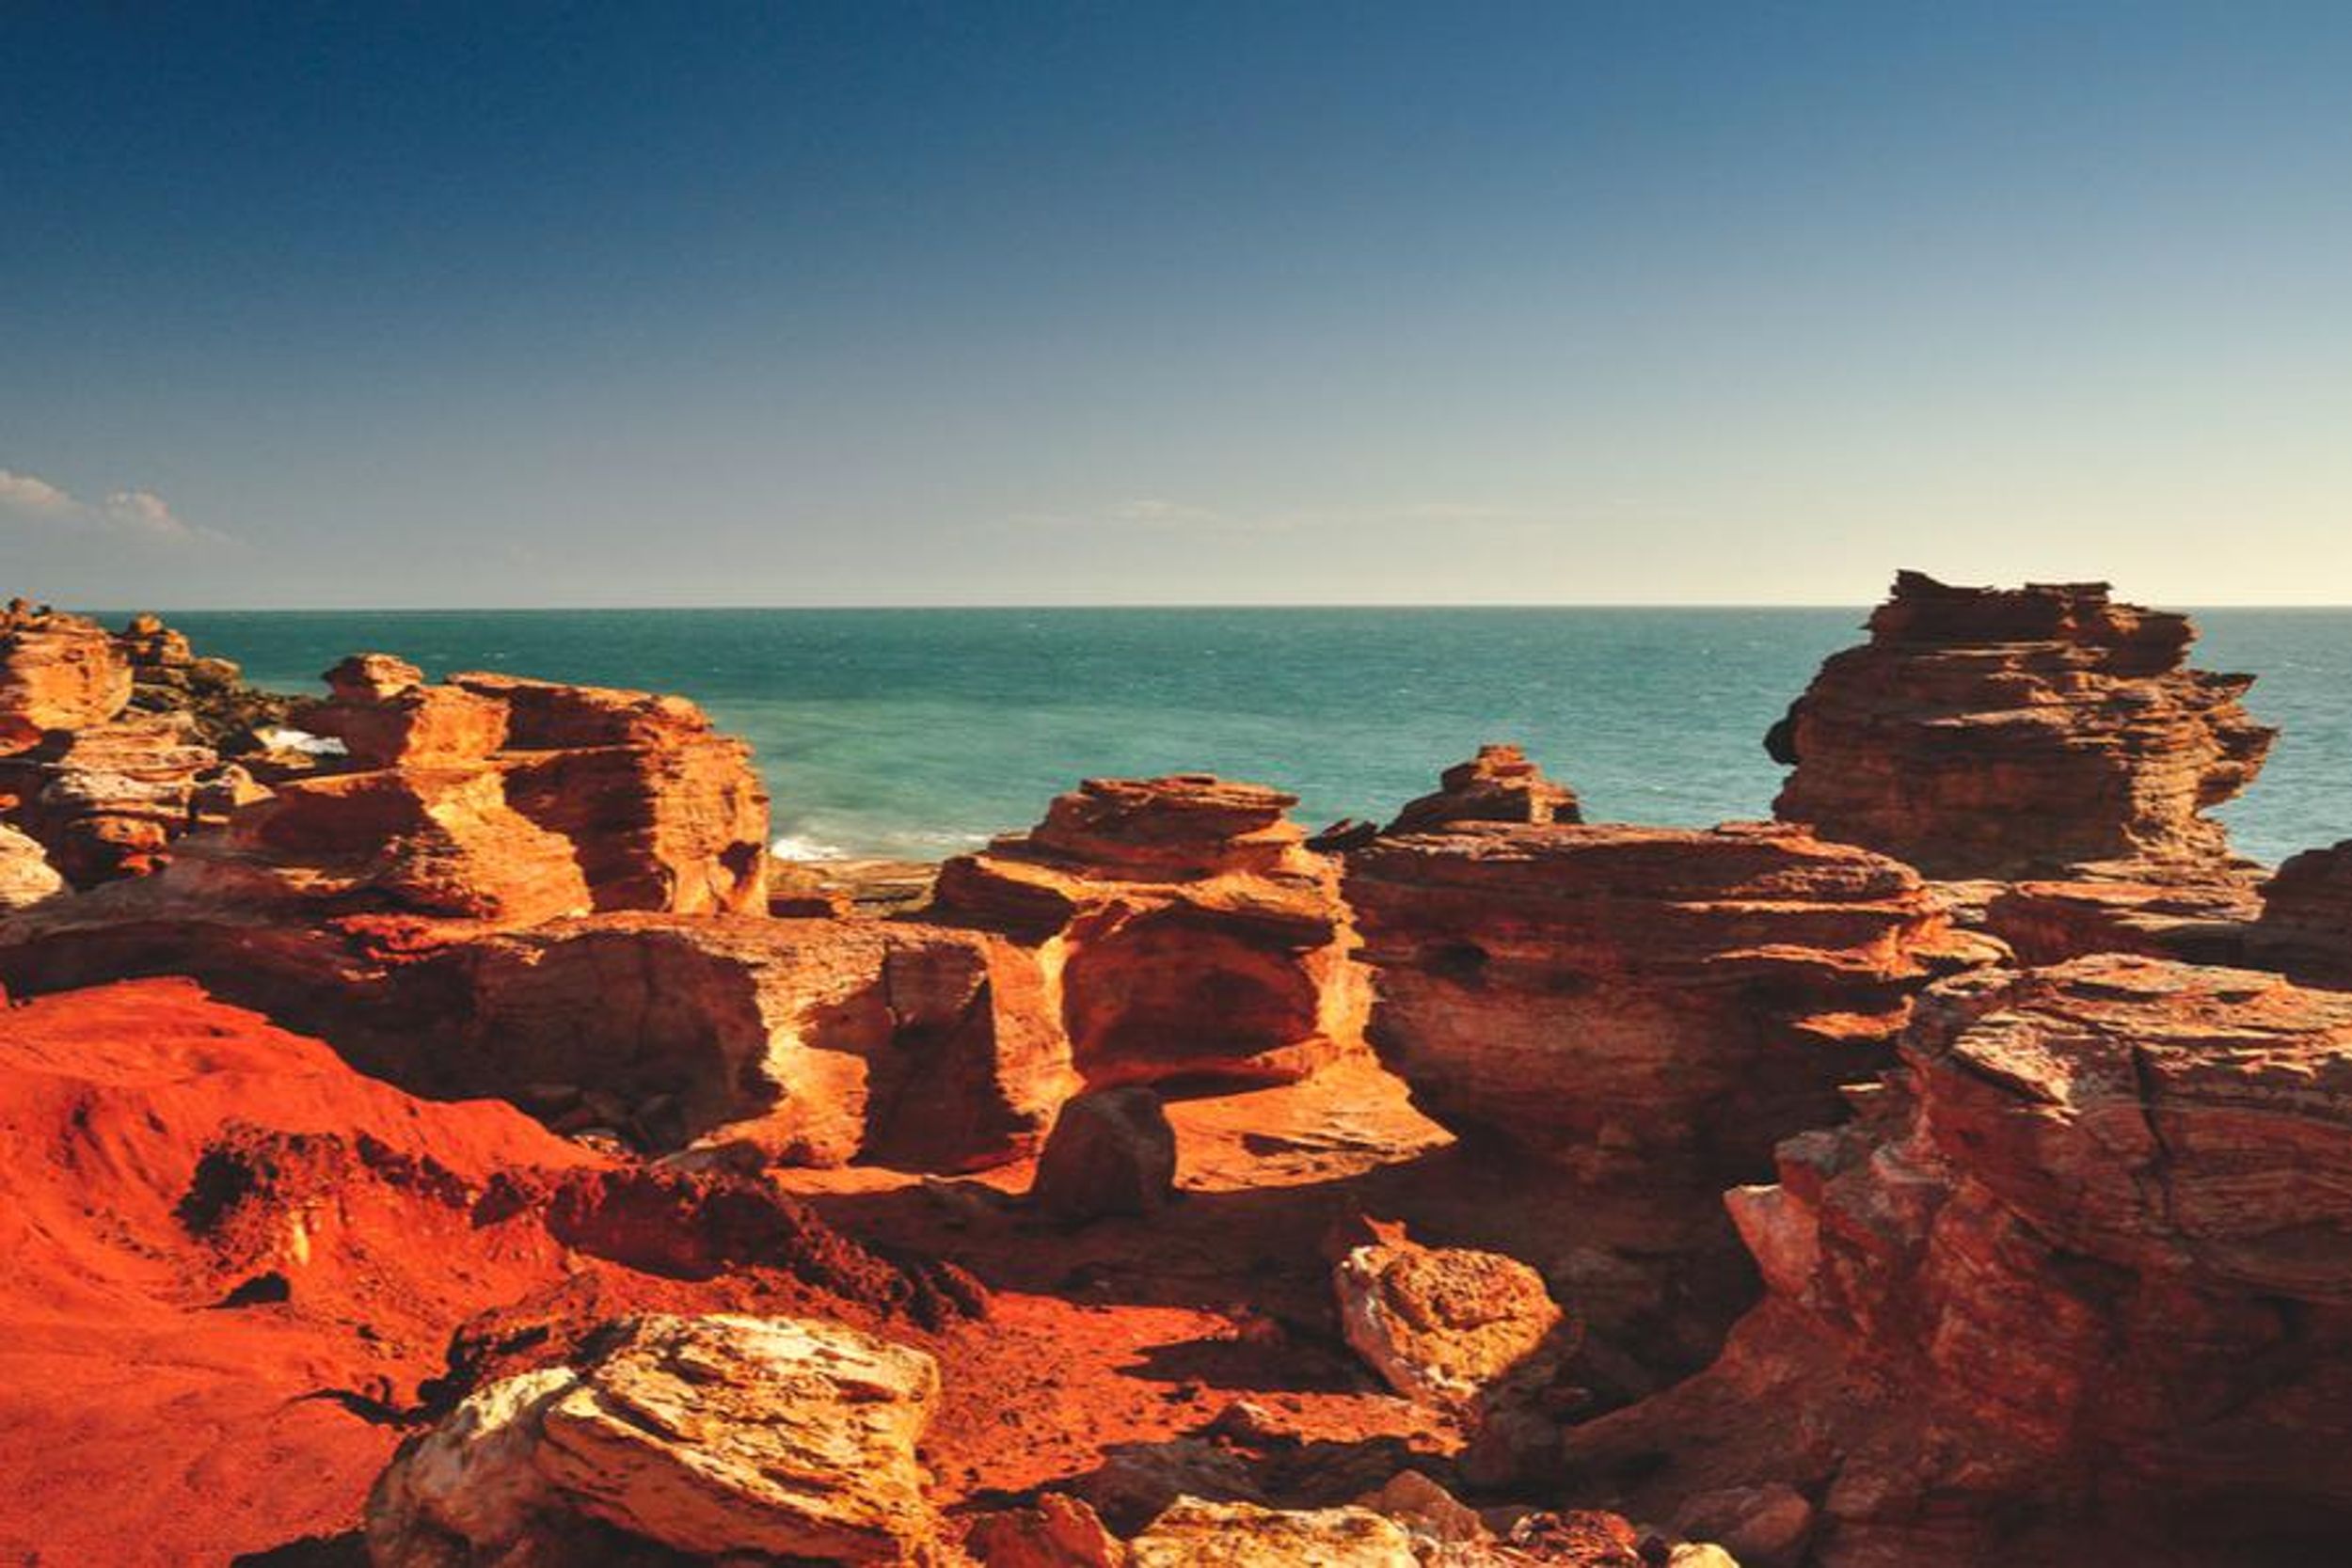 Gantheaume Point in Broome, Western Australia